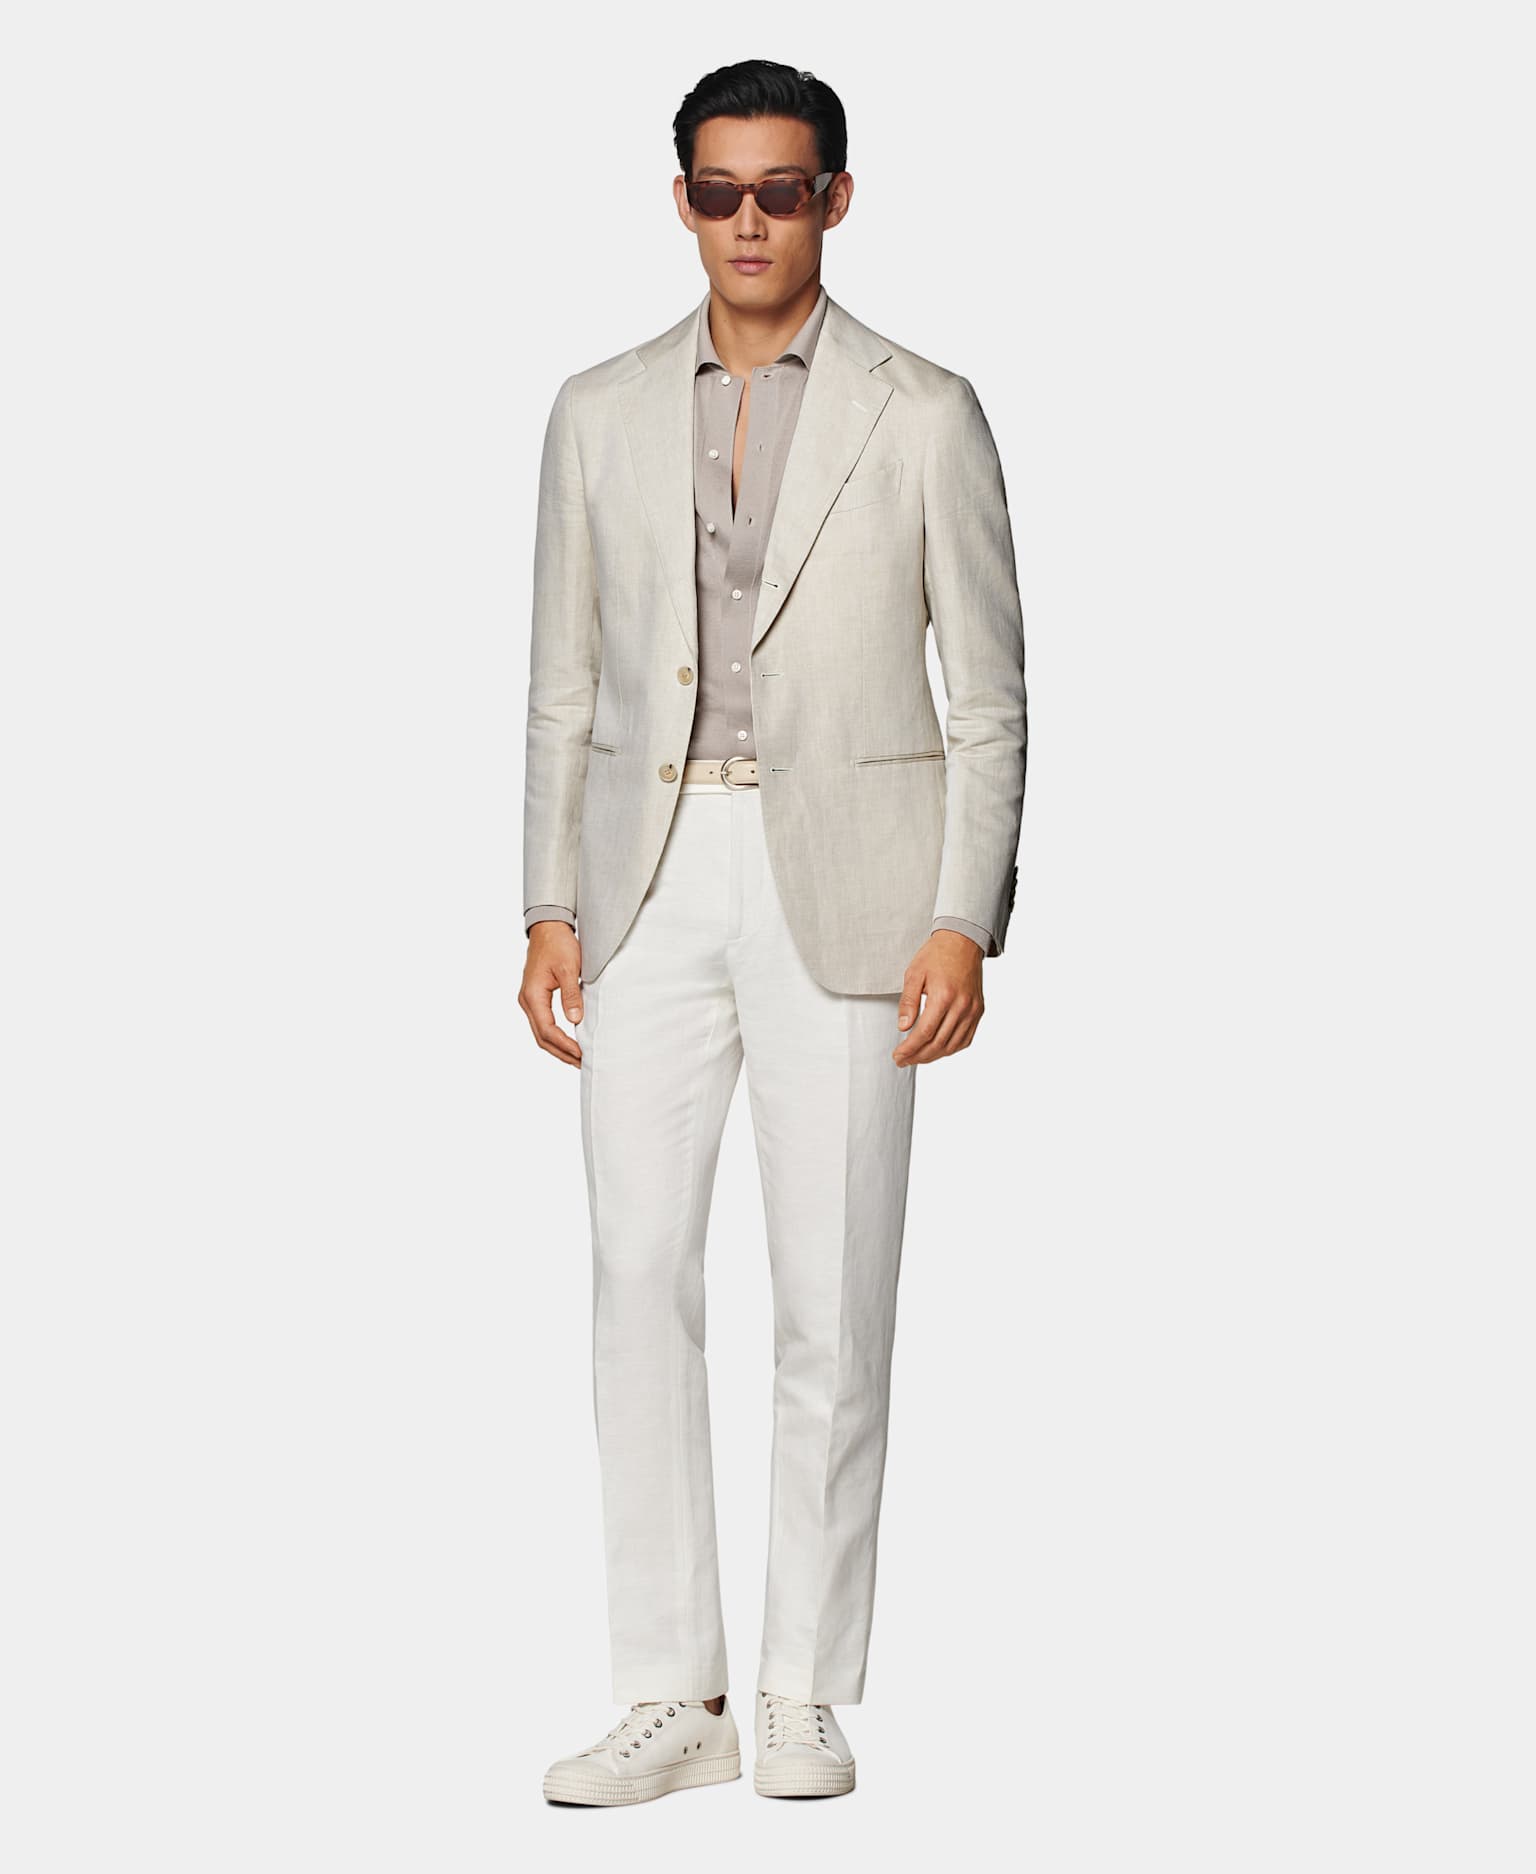 Blazer marrón claro con camisa gris topo, cinturón en tono tostado, pantalones blancos y sneakers de lona color crudo.